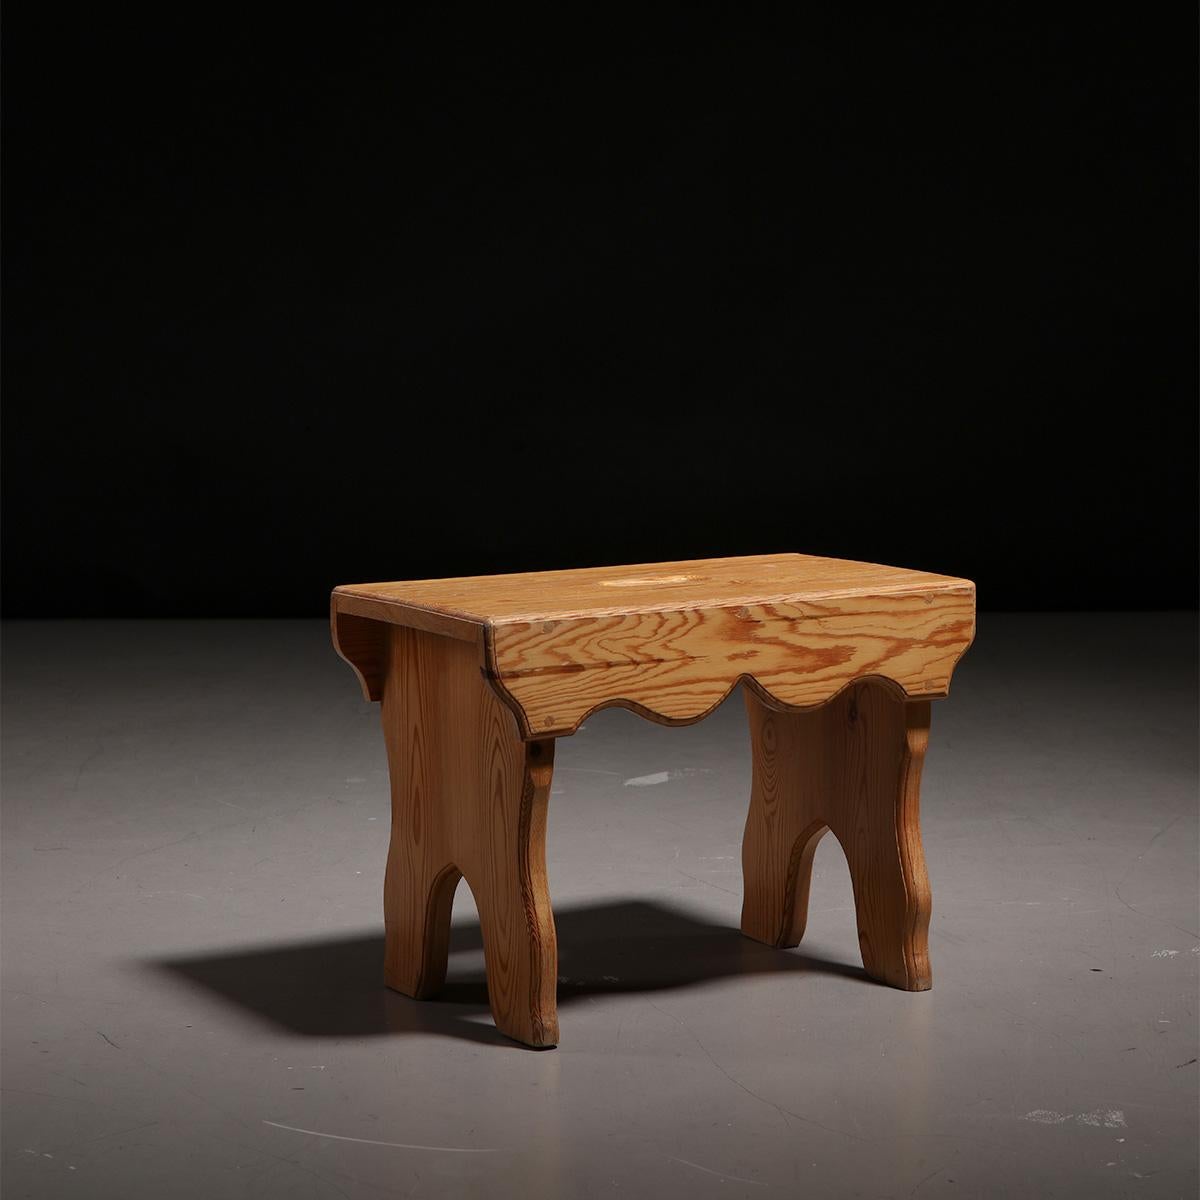 Tabouret ou petite table d'appoint scandinave en pin, fabriqué en Suède dans les années 1940.

Ce tabouret ou petite table d'appoint en bois est unique et sculptural dans son design grâce à la forme des pieds et de l'assise, tous réalisés en bois de